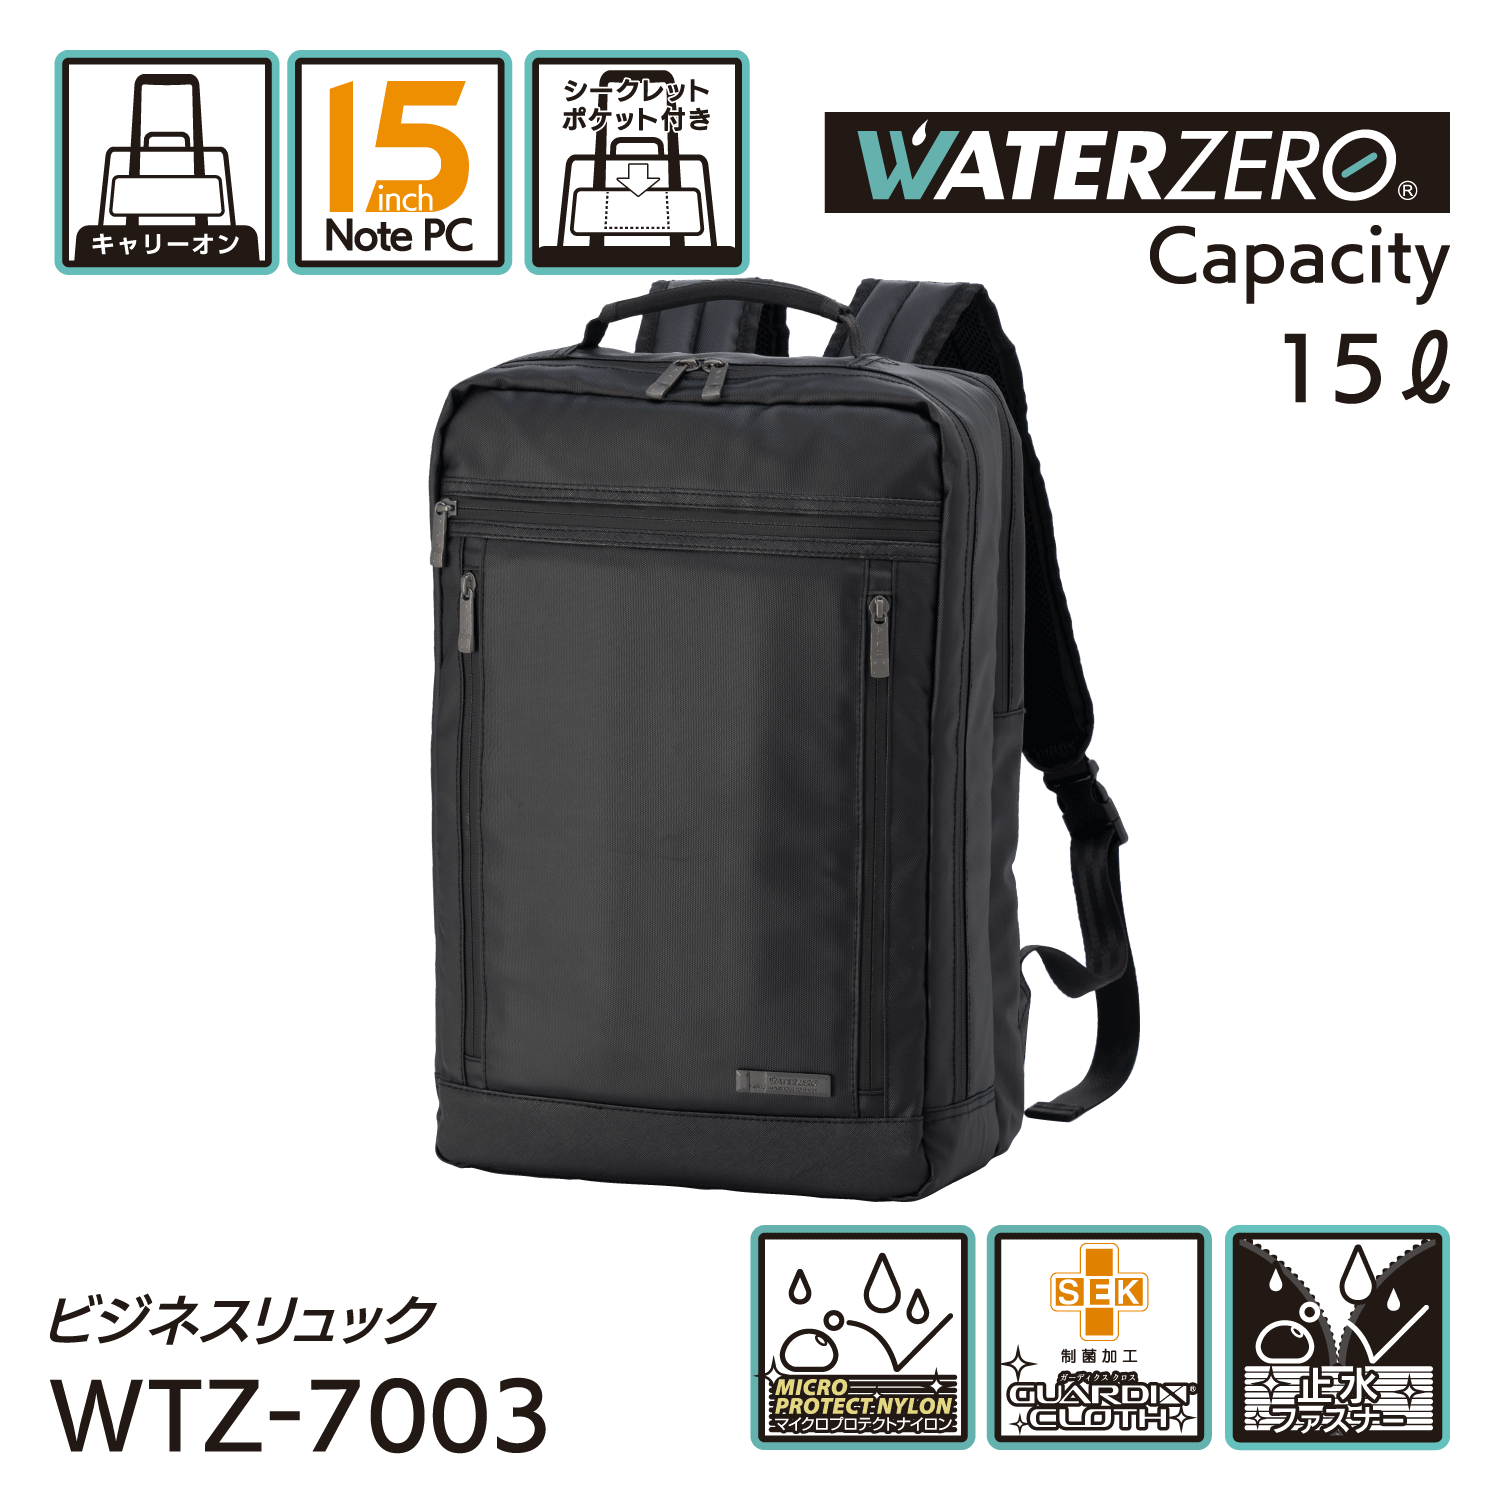 軽量・強撥水シリーズ 止水ファスナー搭載 抗菌加工 NEW WATER ZERO ビジネスリュック 15L WTZ-7003